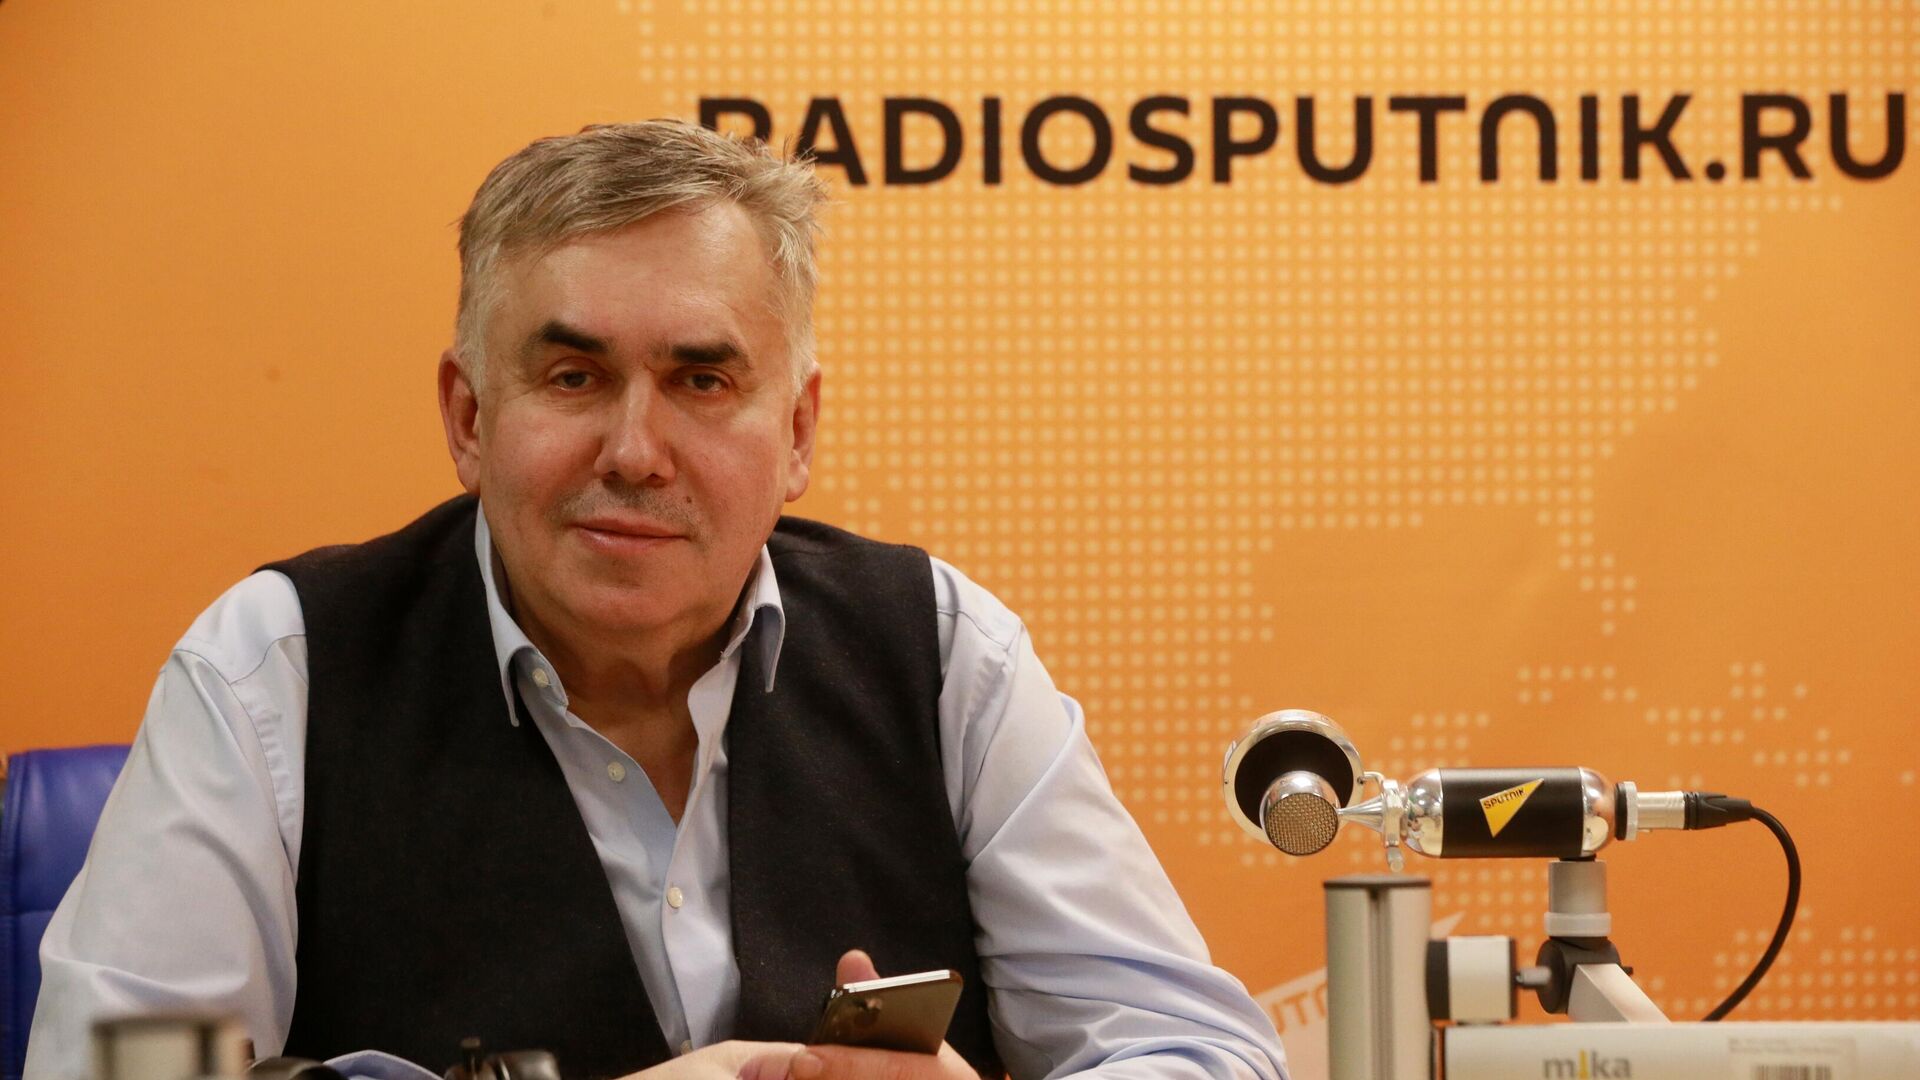 Актер Станислав Садальский во время интервью в студии радио Sputnik в Москве - РИА Новости, 1920, 12.03.2021